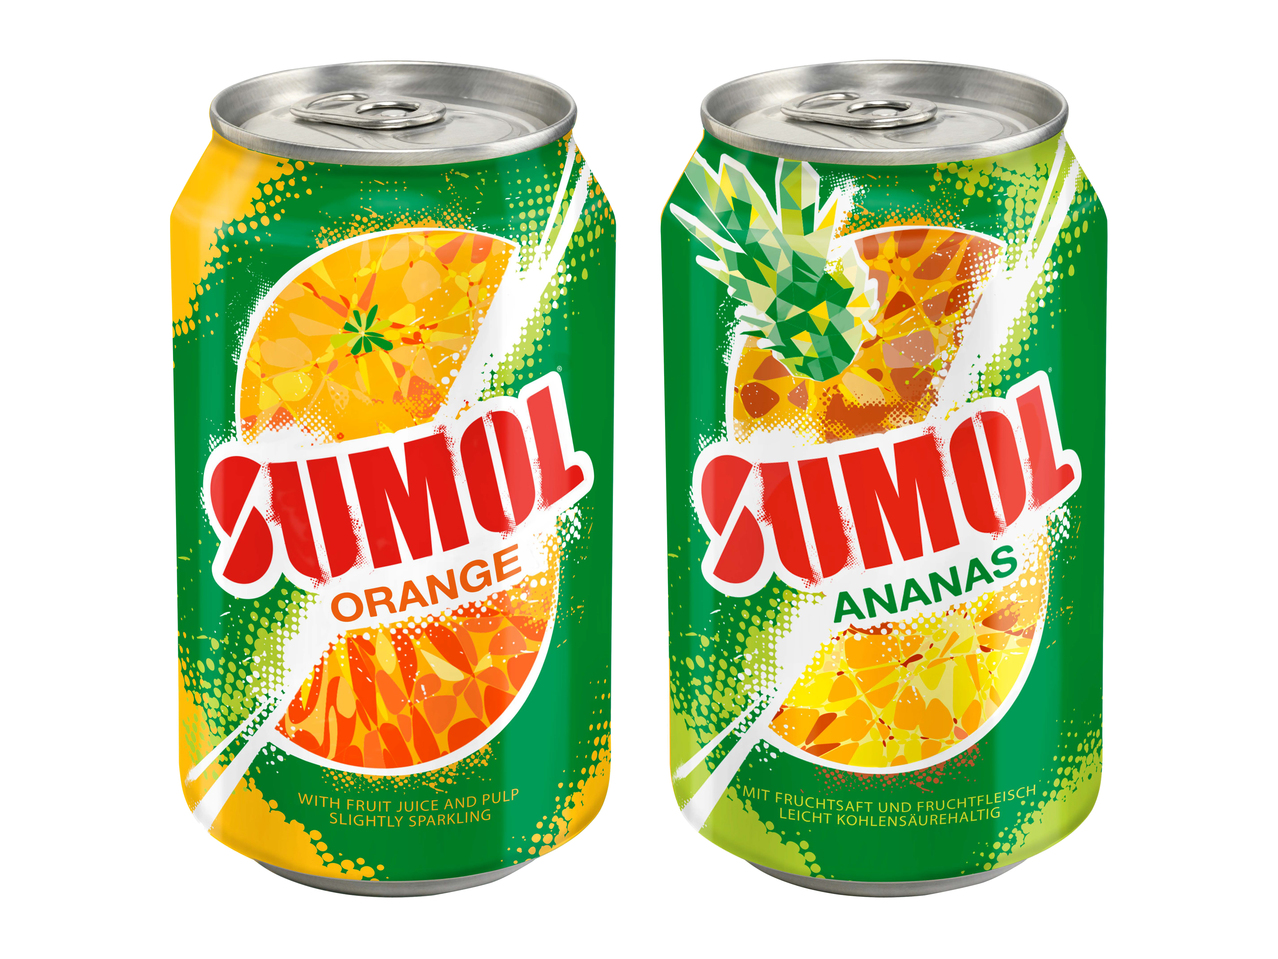 Sumol arancia/ ananas